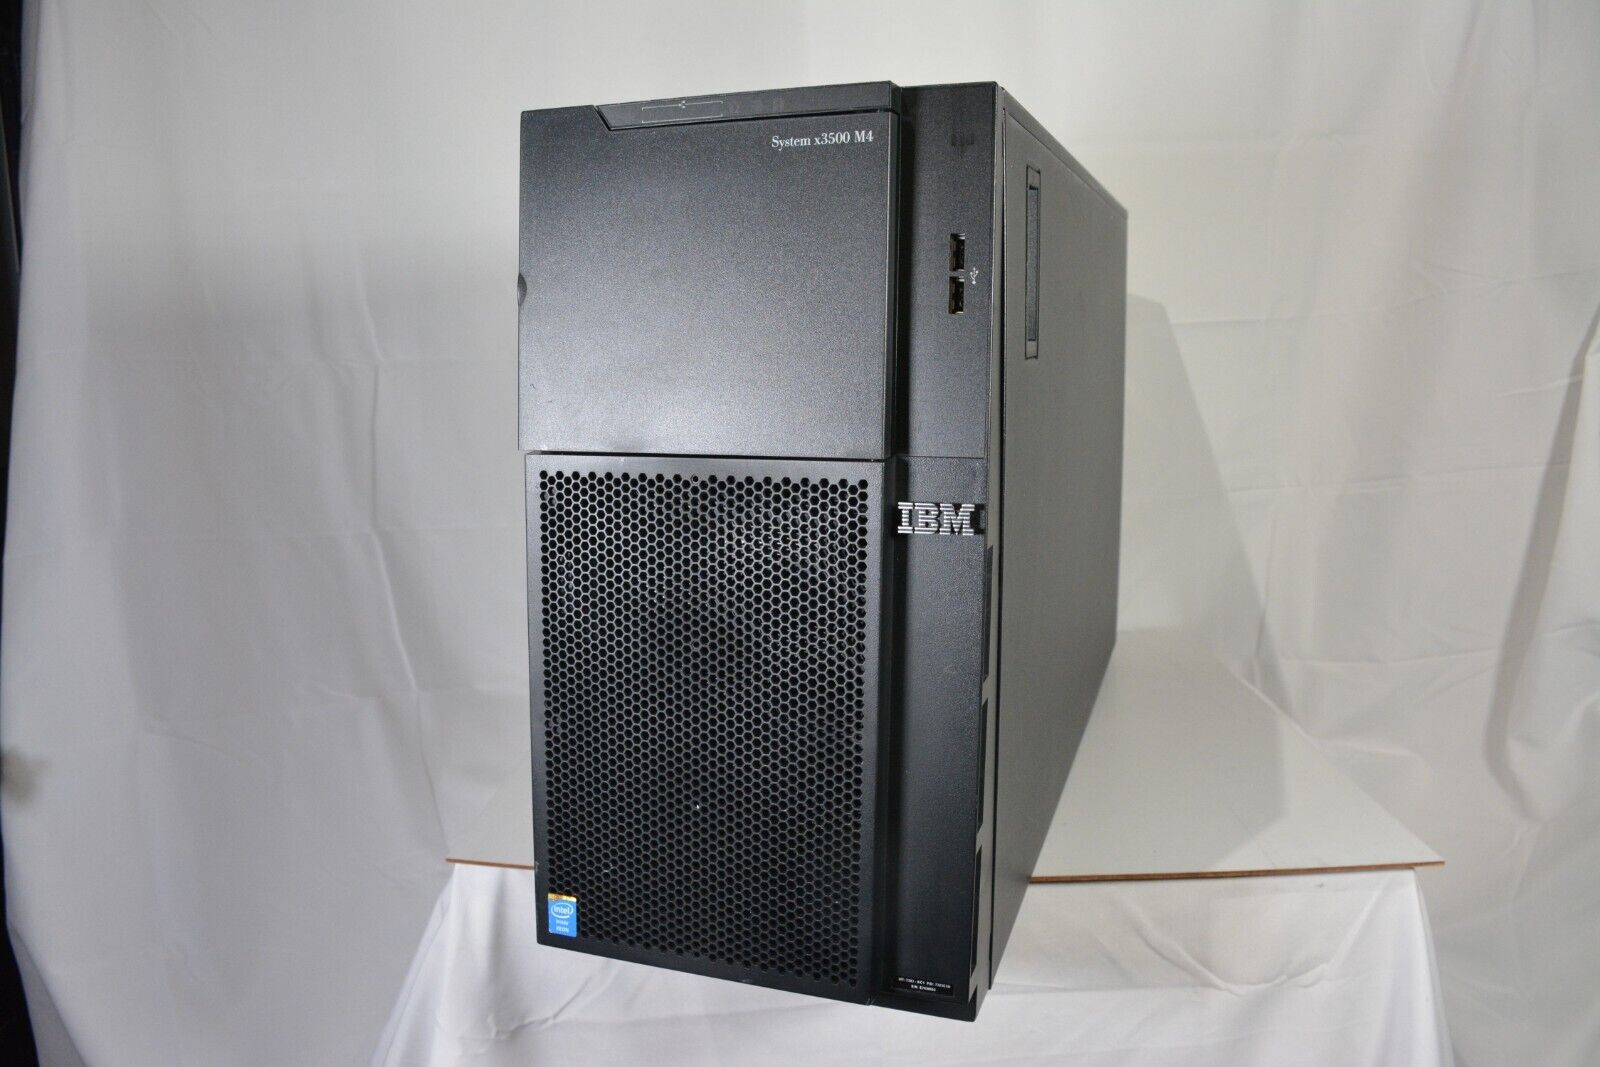 IBM System X3500 M4 Tower Server 2xE5-2690 V2 3.00GHz 192GB 8x1.2TB SAS RAID 2PS